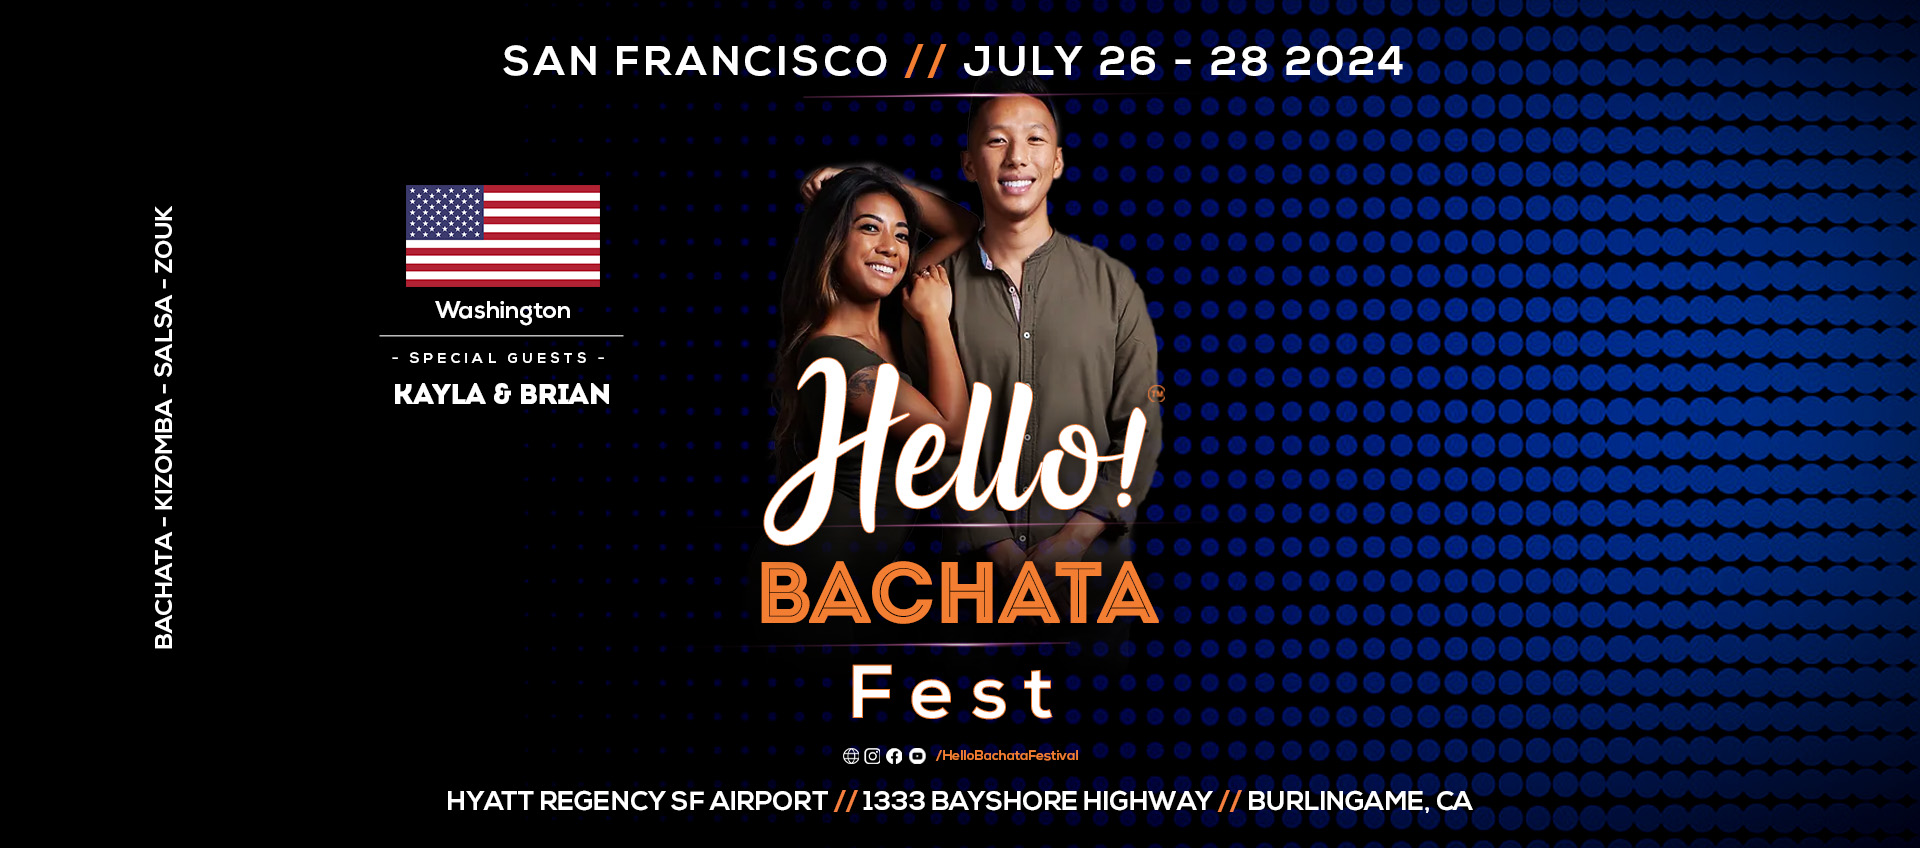 Hello! Bachata Fest - Kayla & Brian - Bachata - Washington